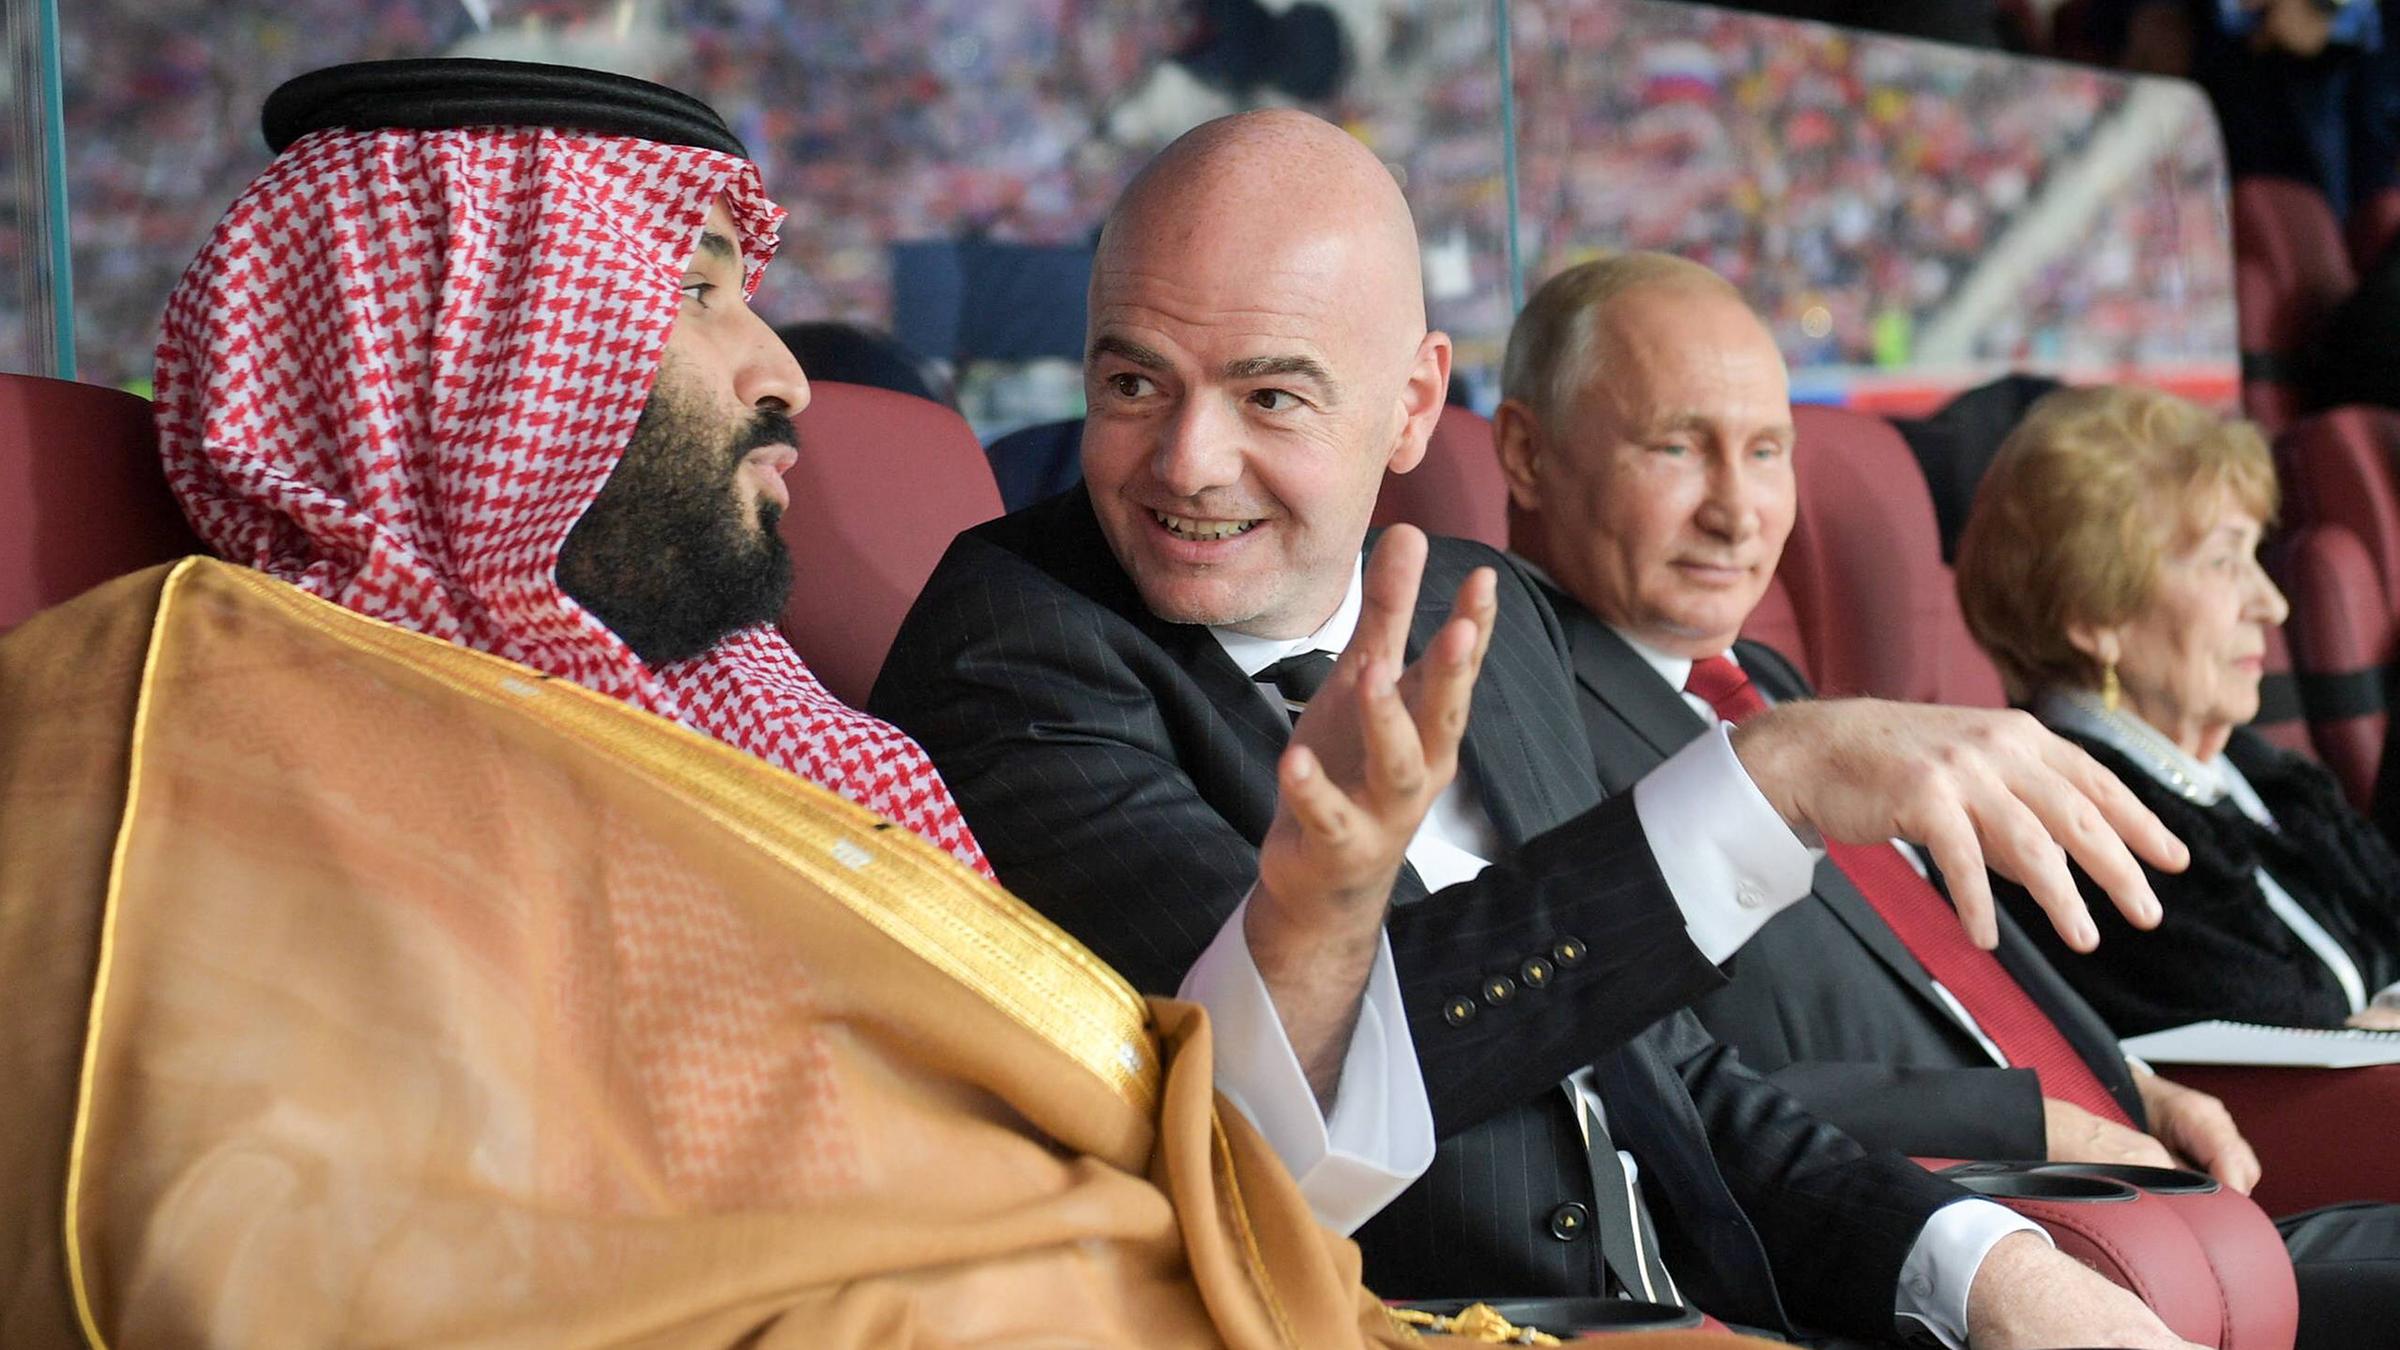 V.l.n.r.: Mohammed Bin Salman, Gianni Infantino und Vladimir Putin, aufgenommen am 14.06.2018